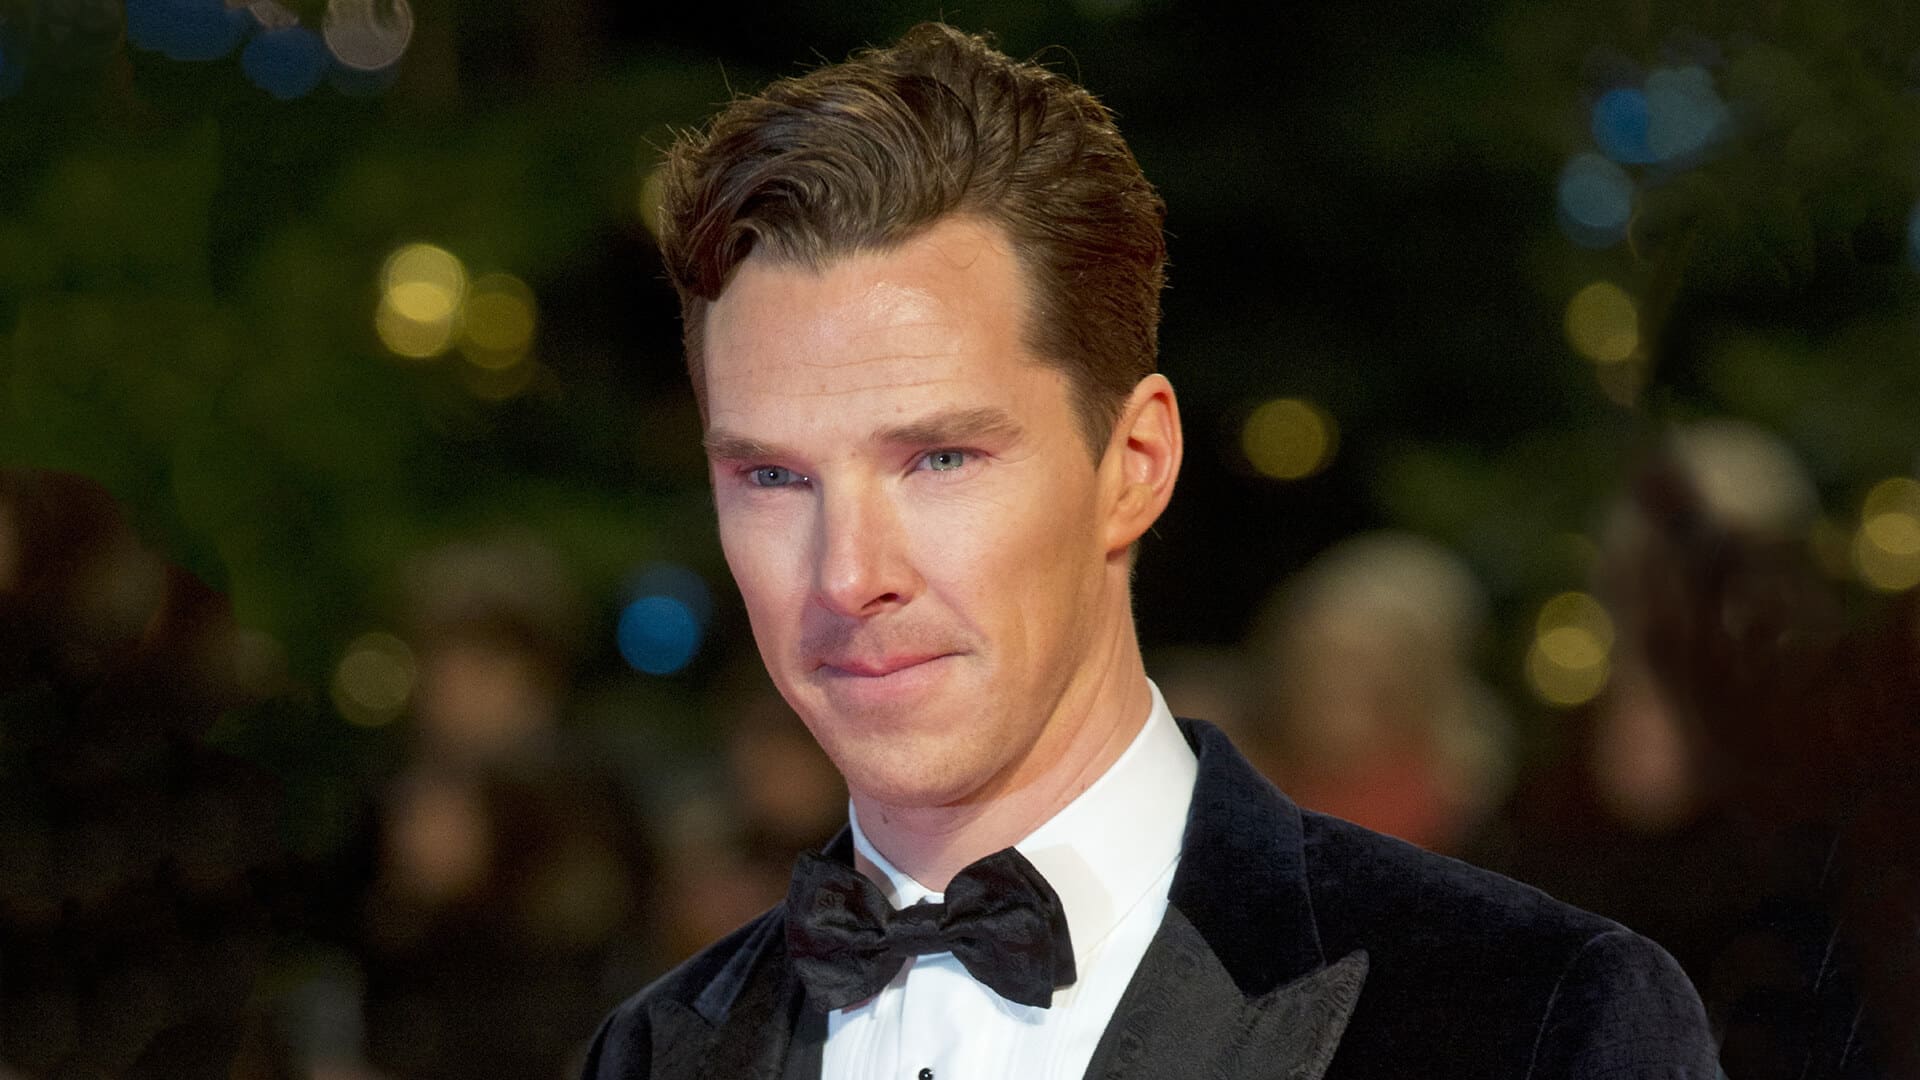 Quanto guadagna Benedict Cumberbatch? Ecco il patrimonio e le campagne benefiche dell’attore e doppiatore inglese